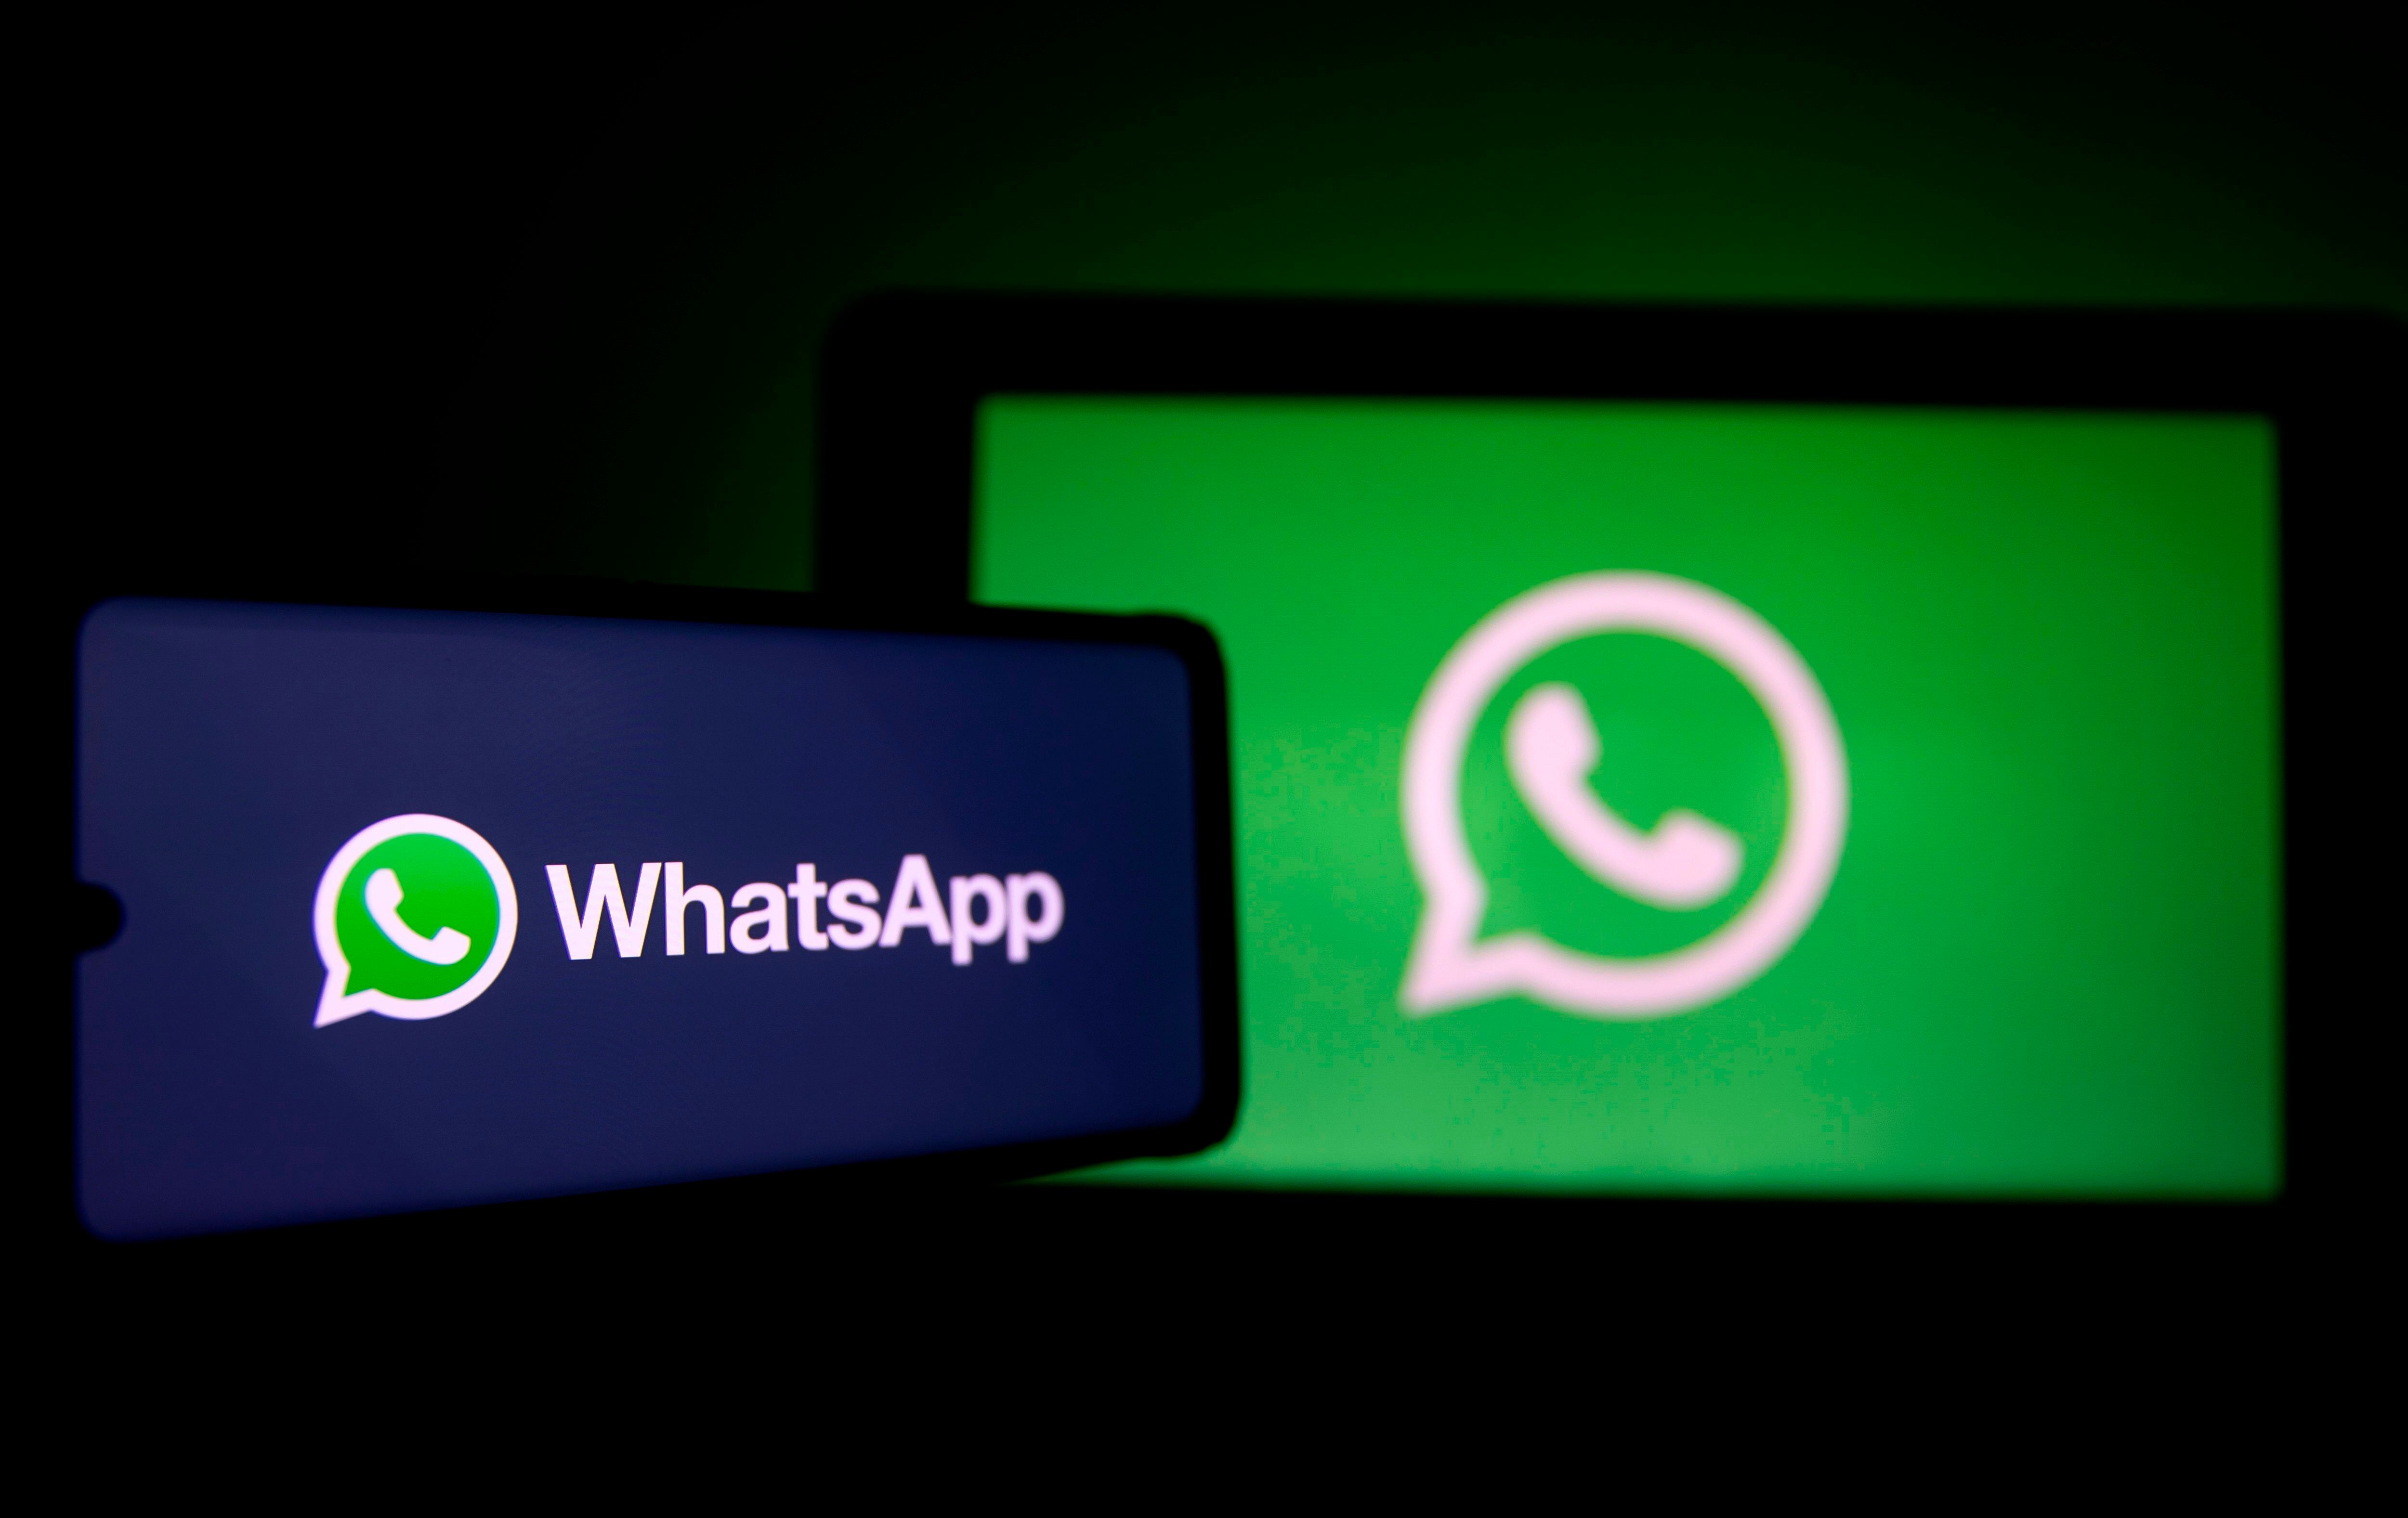 WhatsApp permite guardar mensajes y no recibir alertas incomodas. (EFE)